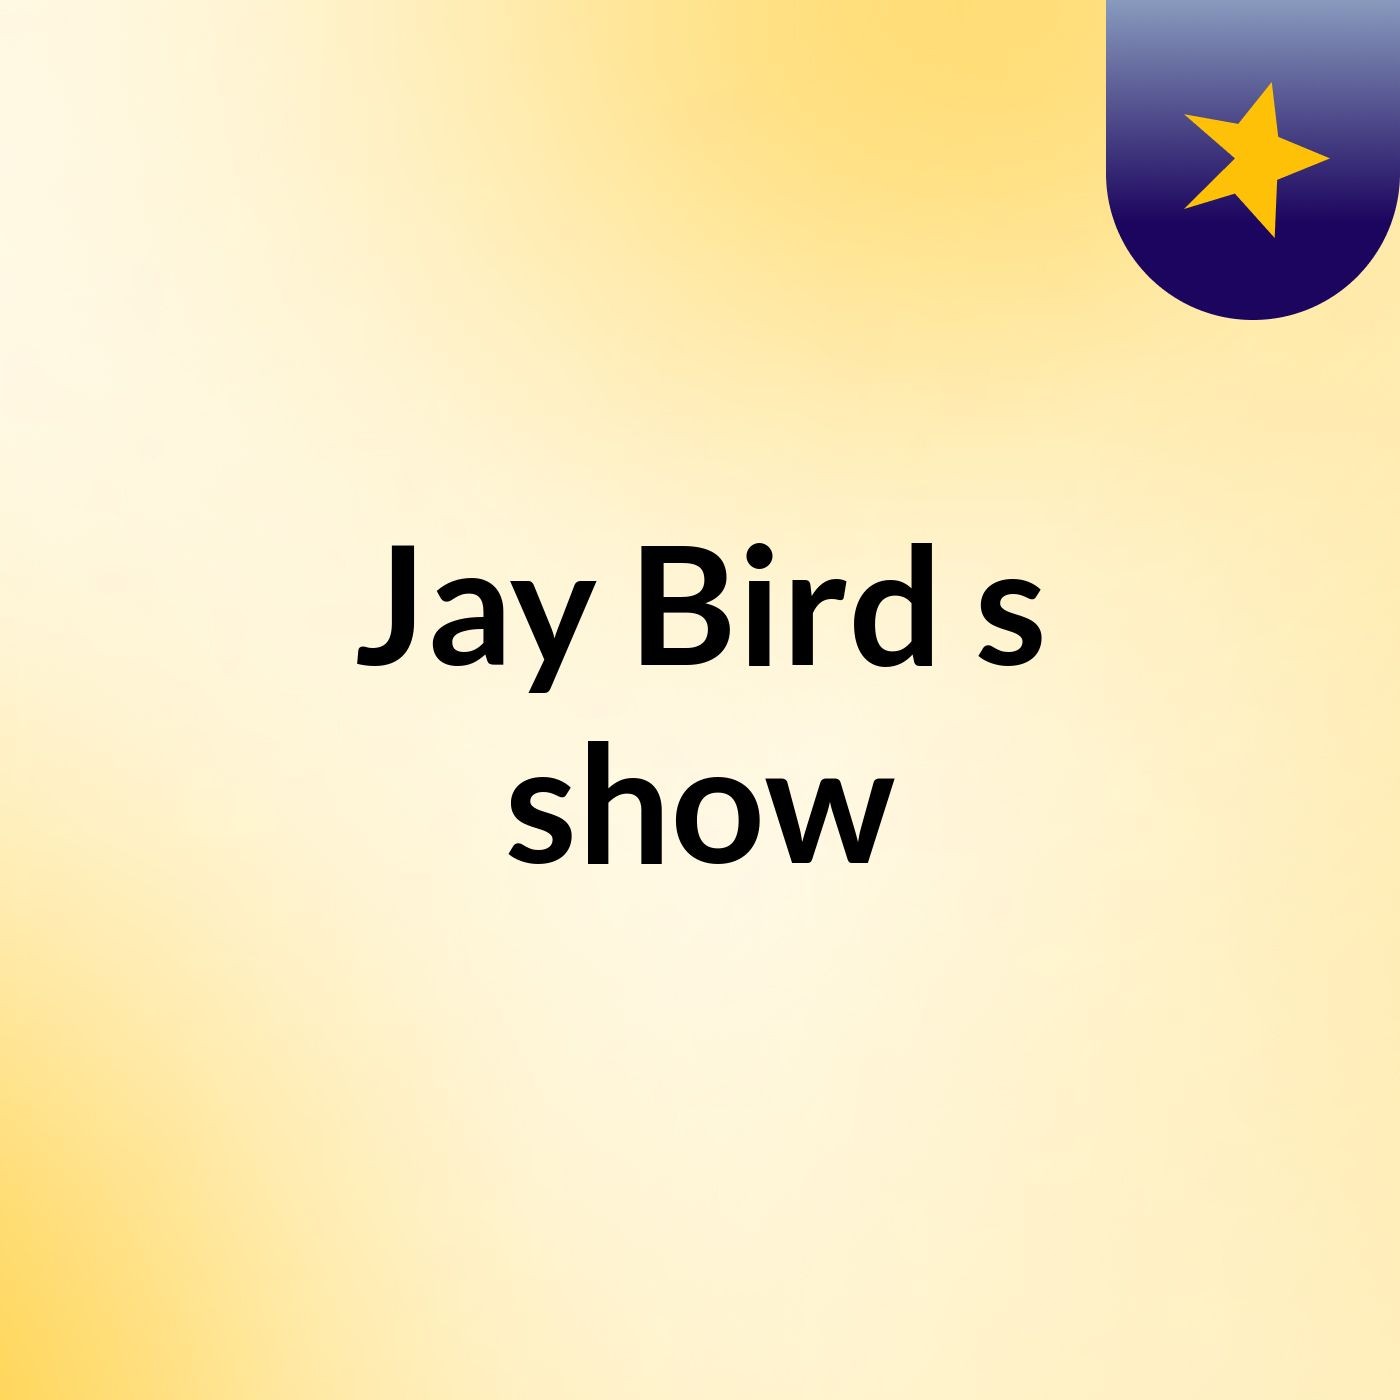 Jay Bird's show